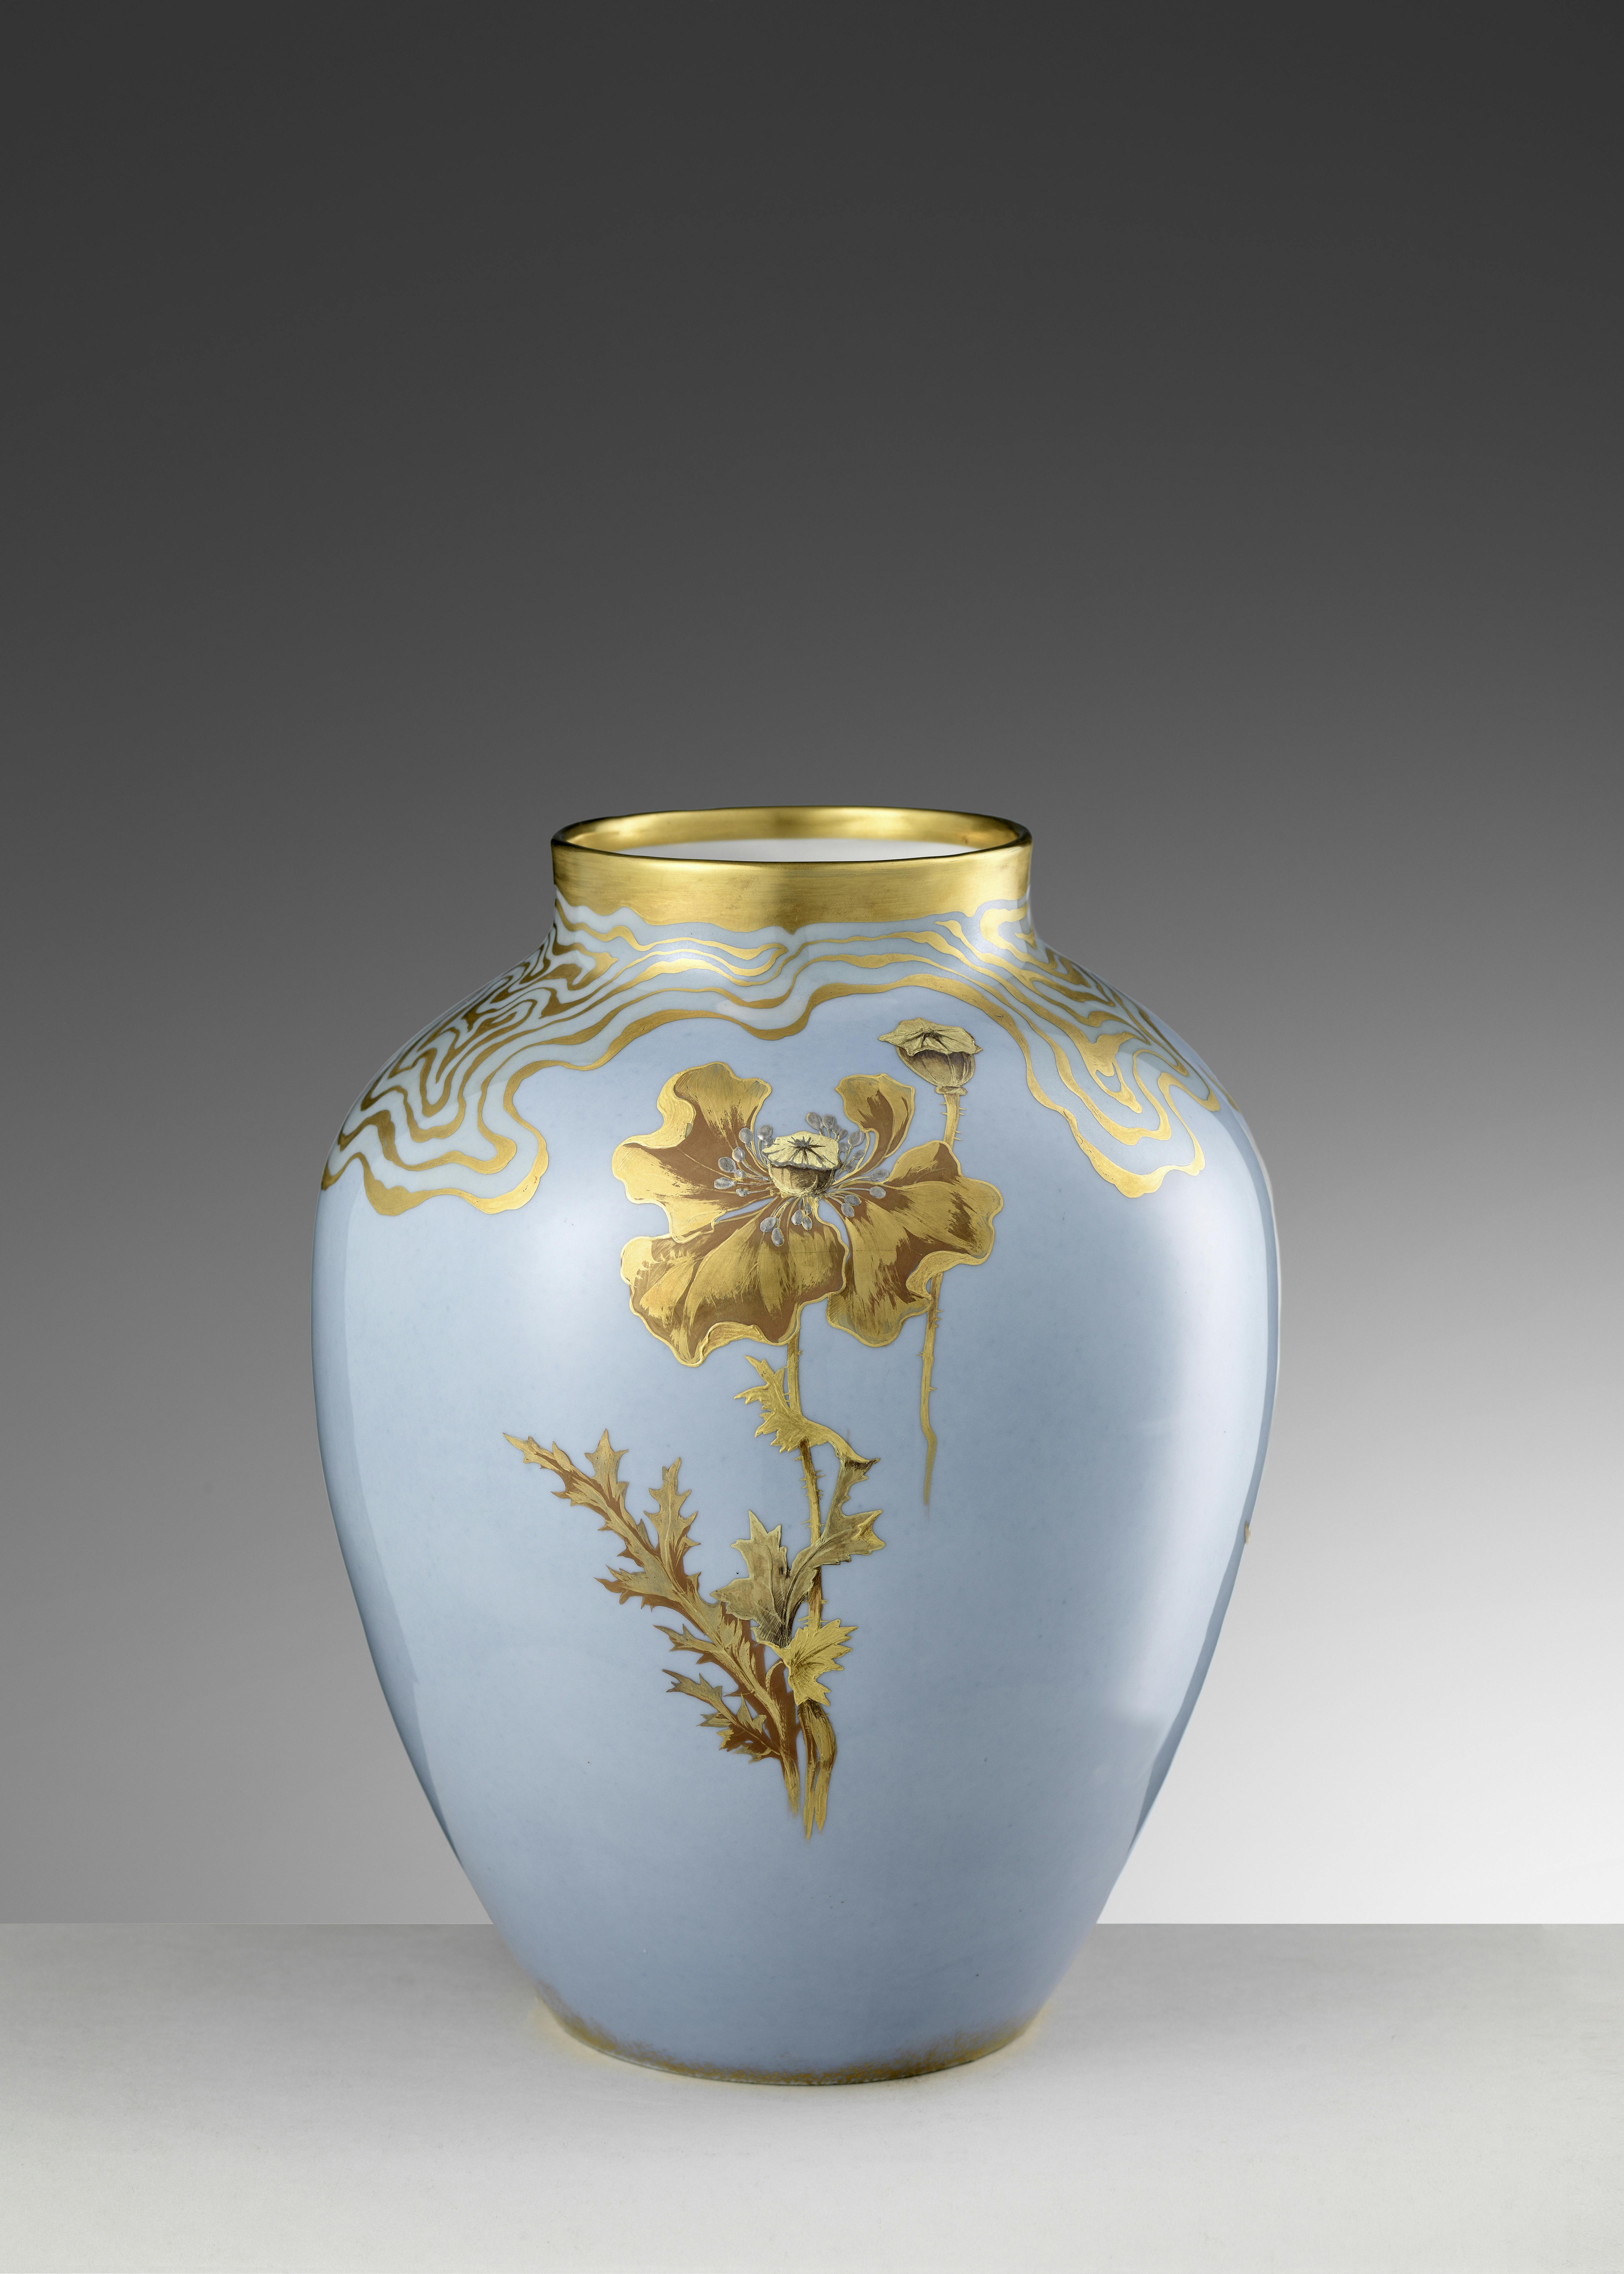 Vaso azzurro con decorazioni floreali in oro